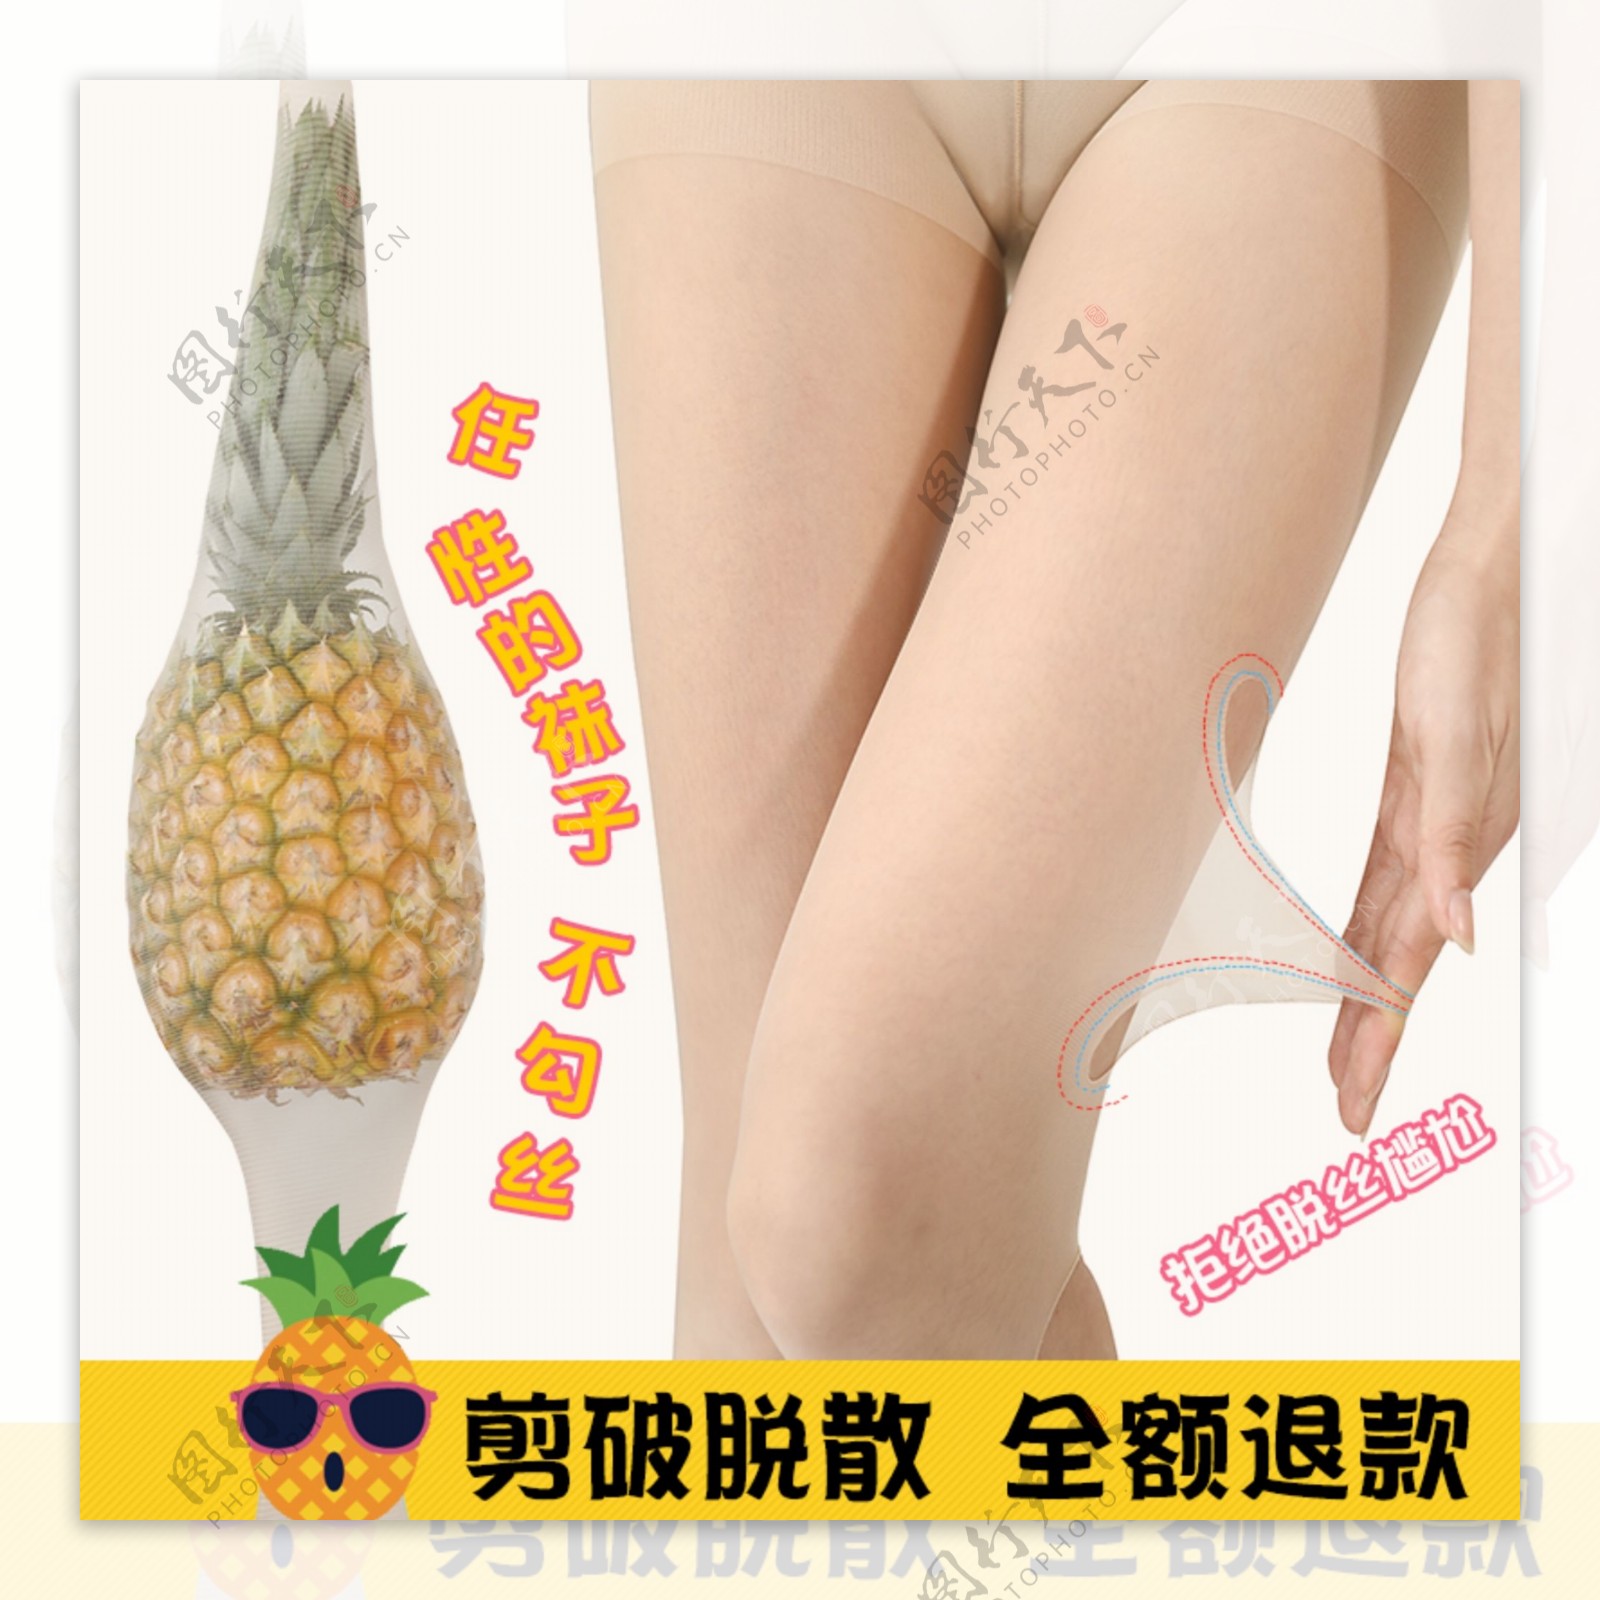 菠萝袜子主图菠萝袜丝袜